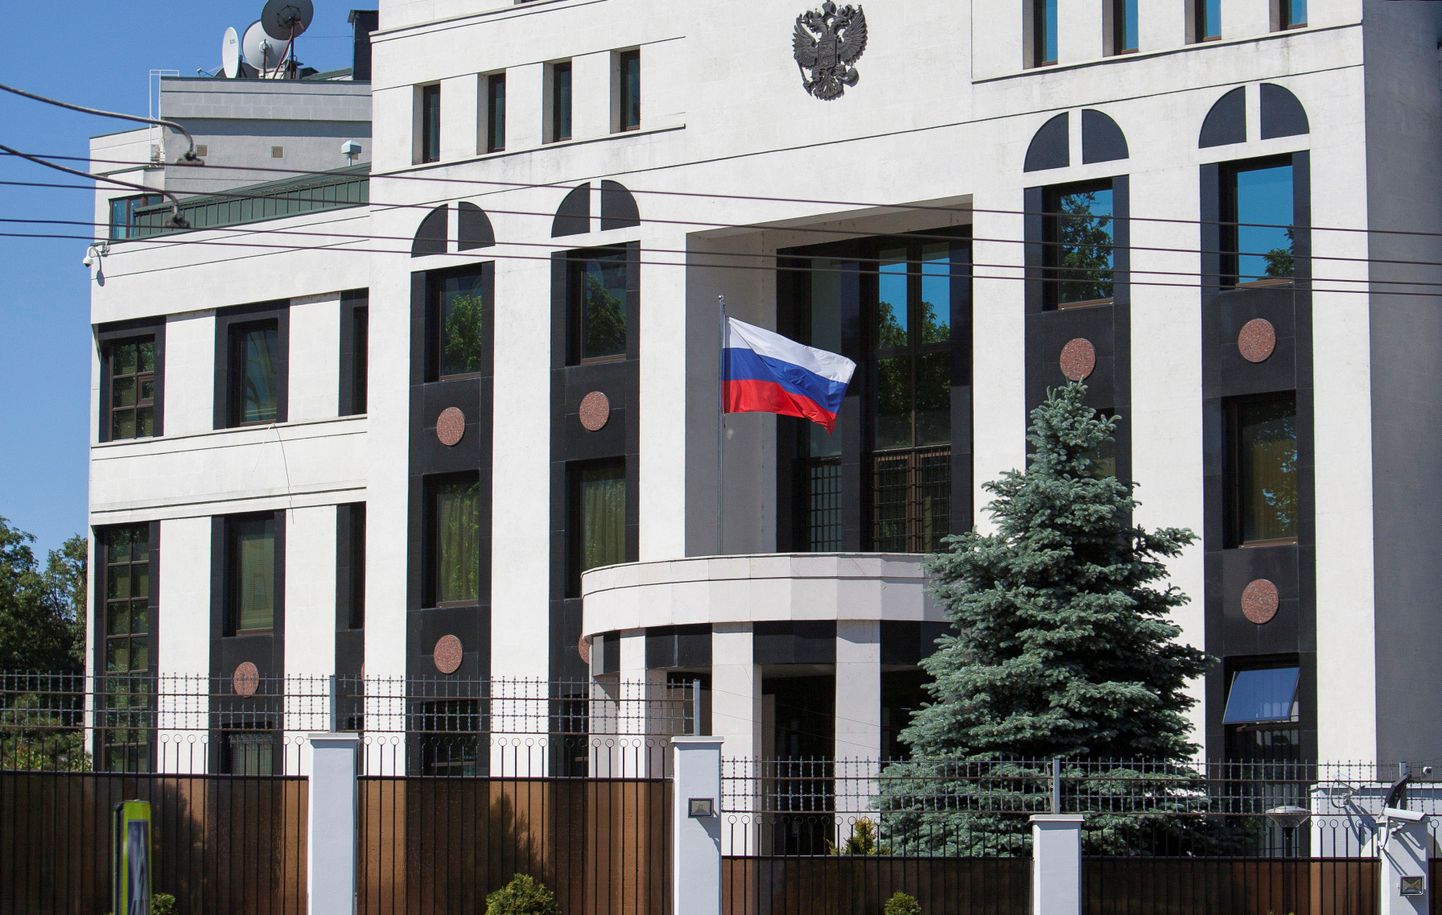 Vene saatkonnahoone Moldova pealinnas Chișinăus.